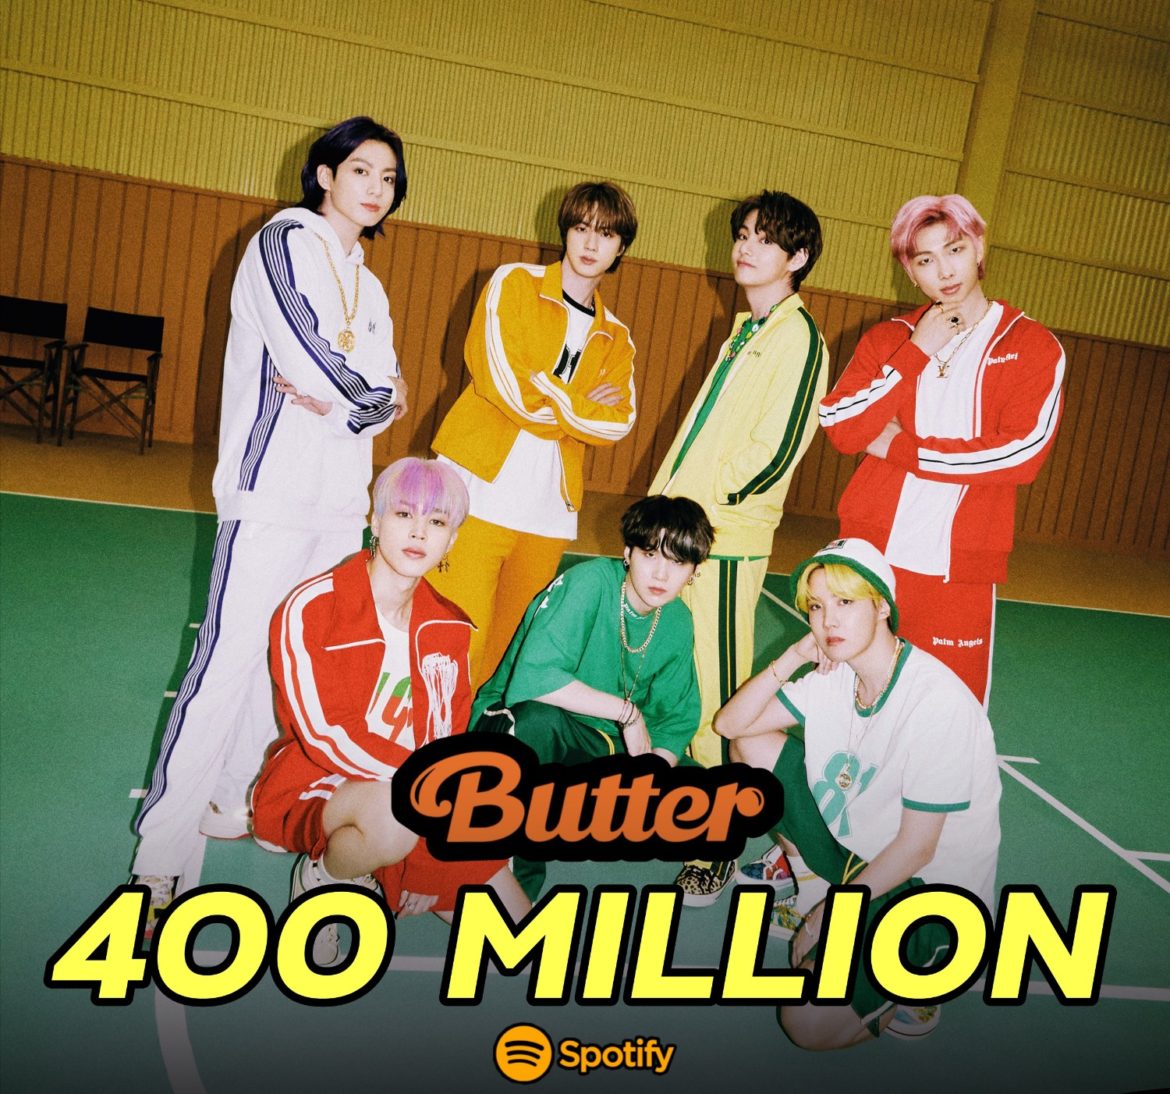 ทะลุไปอีก! เพลง ‘Butter’ มียอดสตรีมไปแล้ว 400 ล้านบน Spotify!